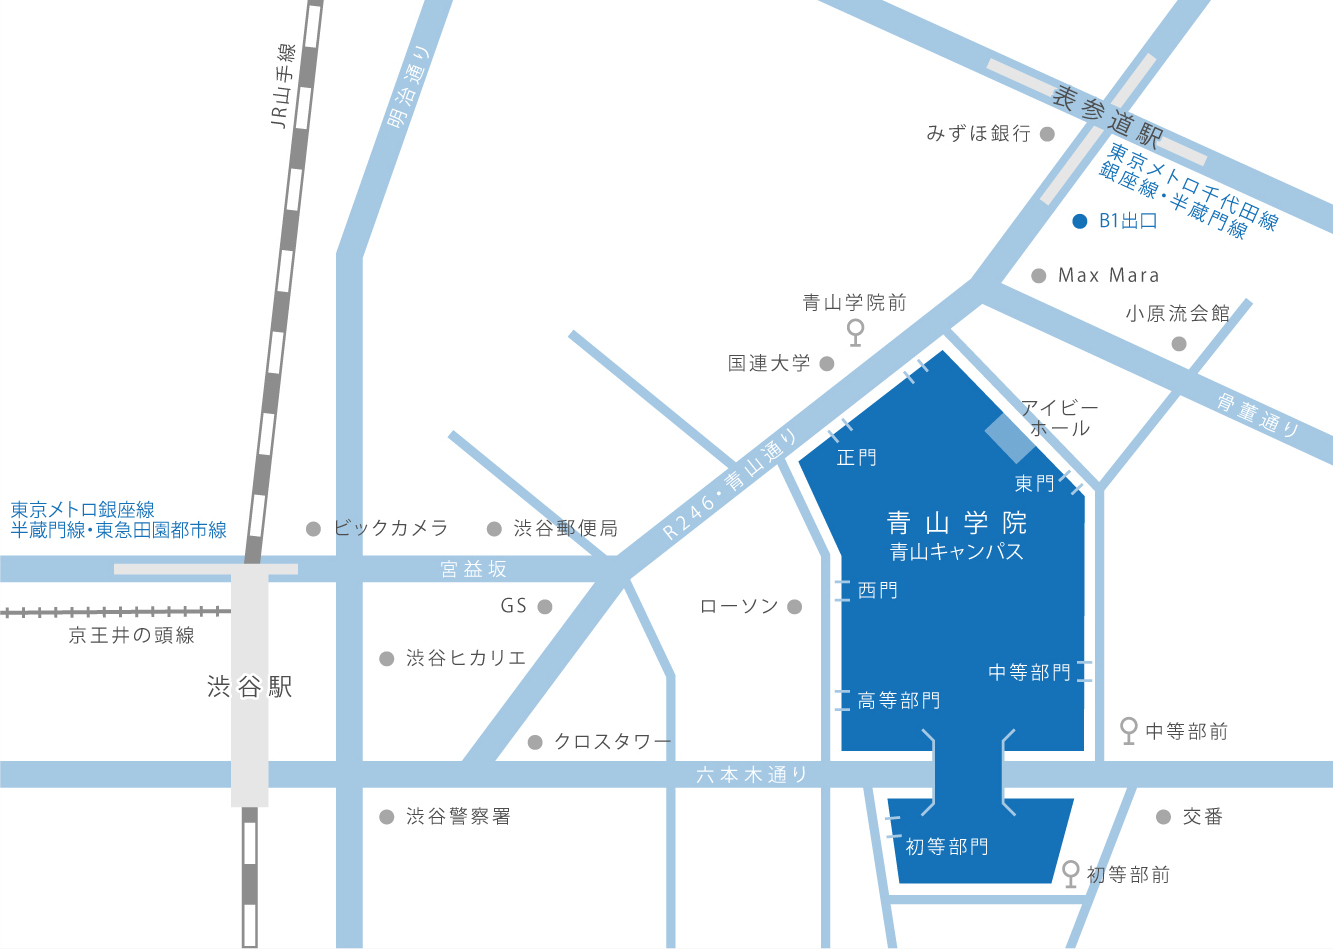 から 渋谷 まで ここ 賃貸で渋谷通勤に楽な駅に住みたい！渋谷駅まで20分で通える駅特集